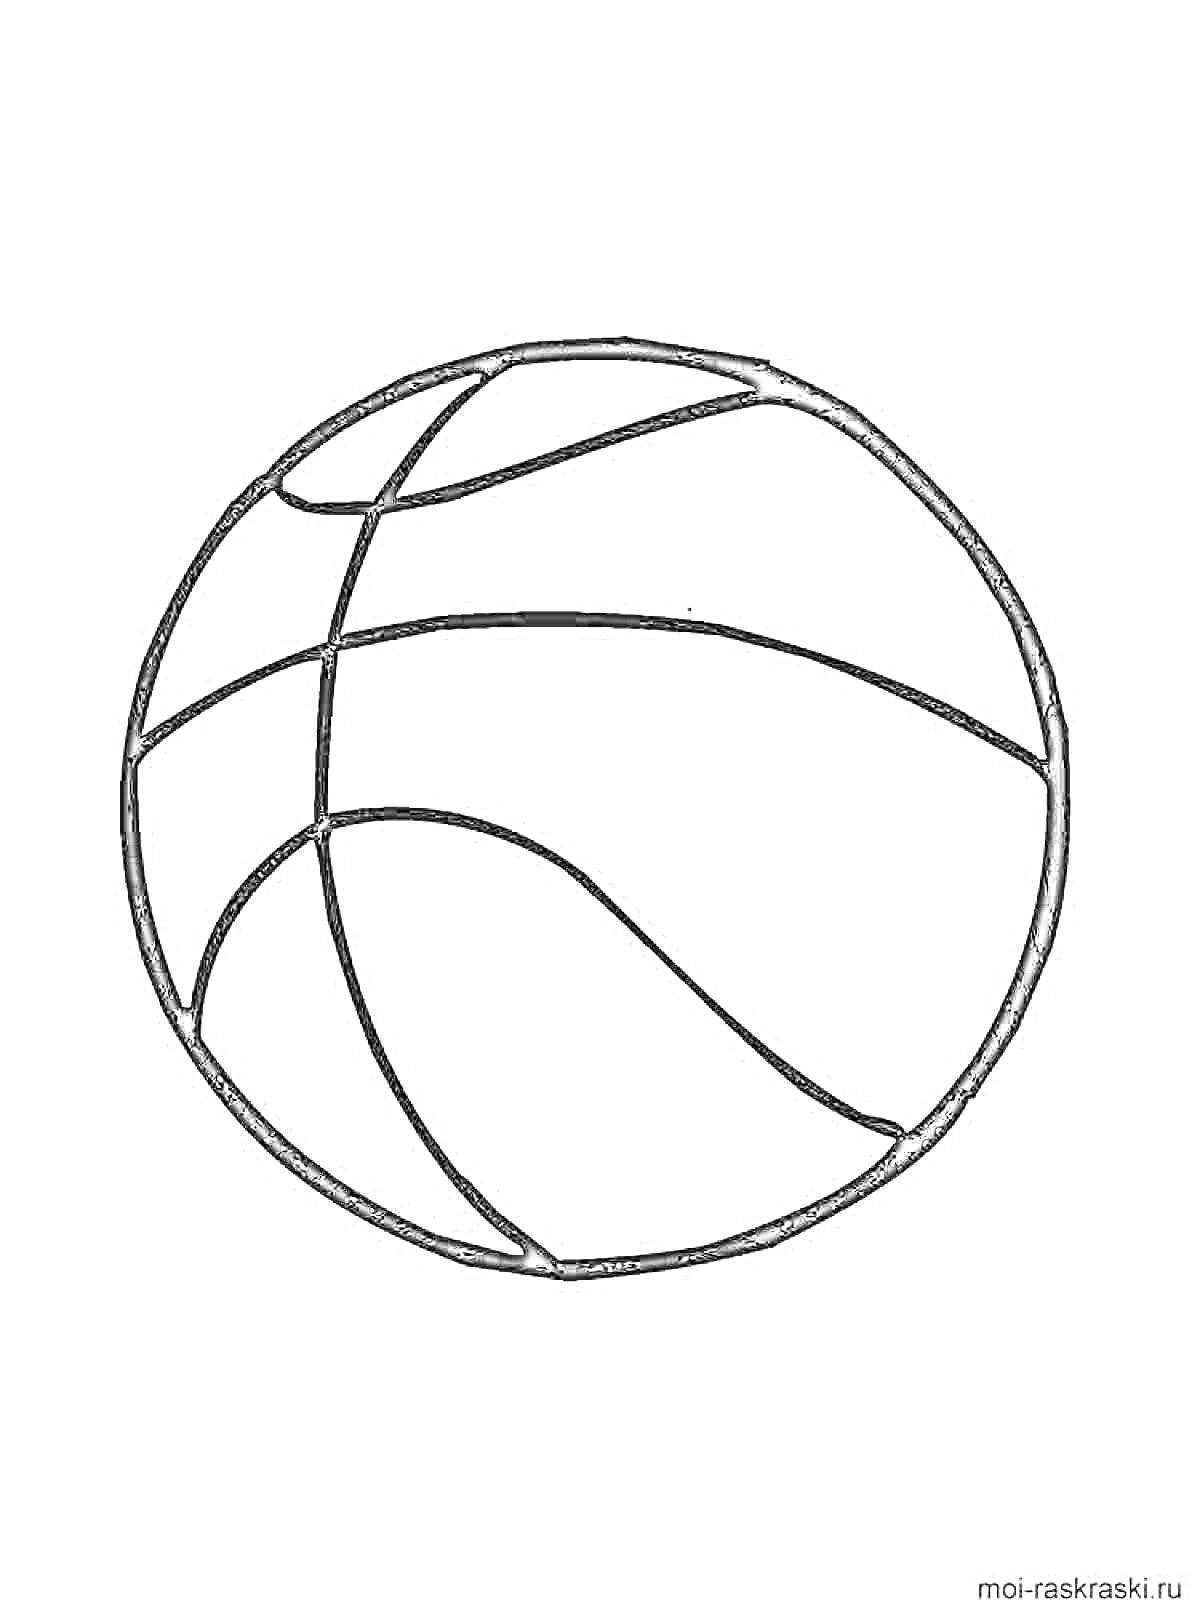 Баскетбольный мяч в контуре